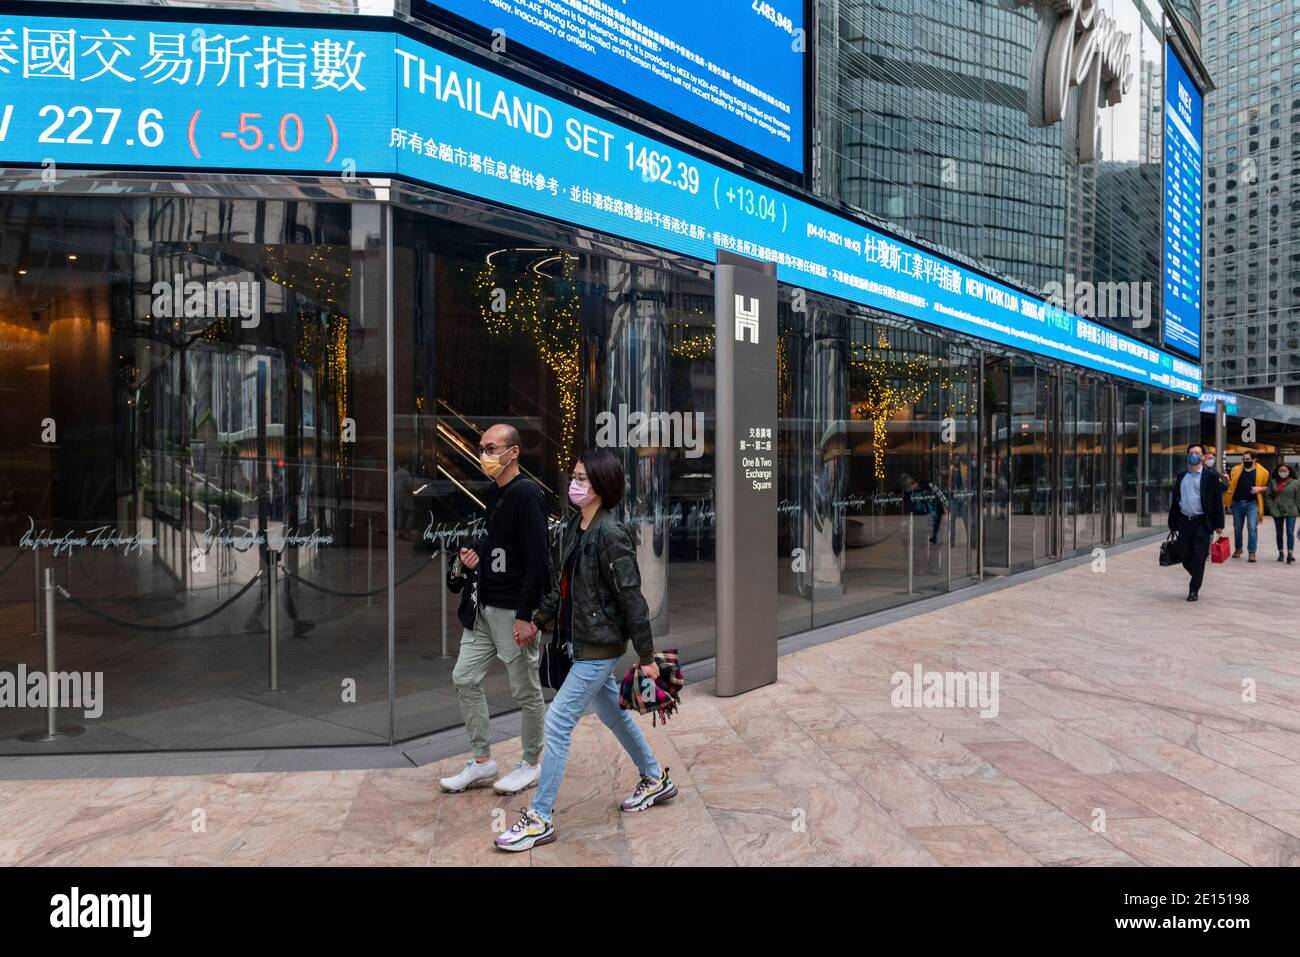 Fußgänger, die Gesichtsmasken tragen, gehen an einer Börsenauslage vorbei, die den ersten Tag des 2021-jährigen Hang Seng Index-Ergebnisses in Hongkong zeigt. Stockfoto